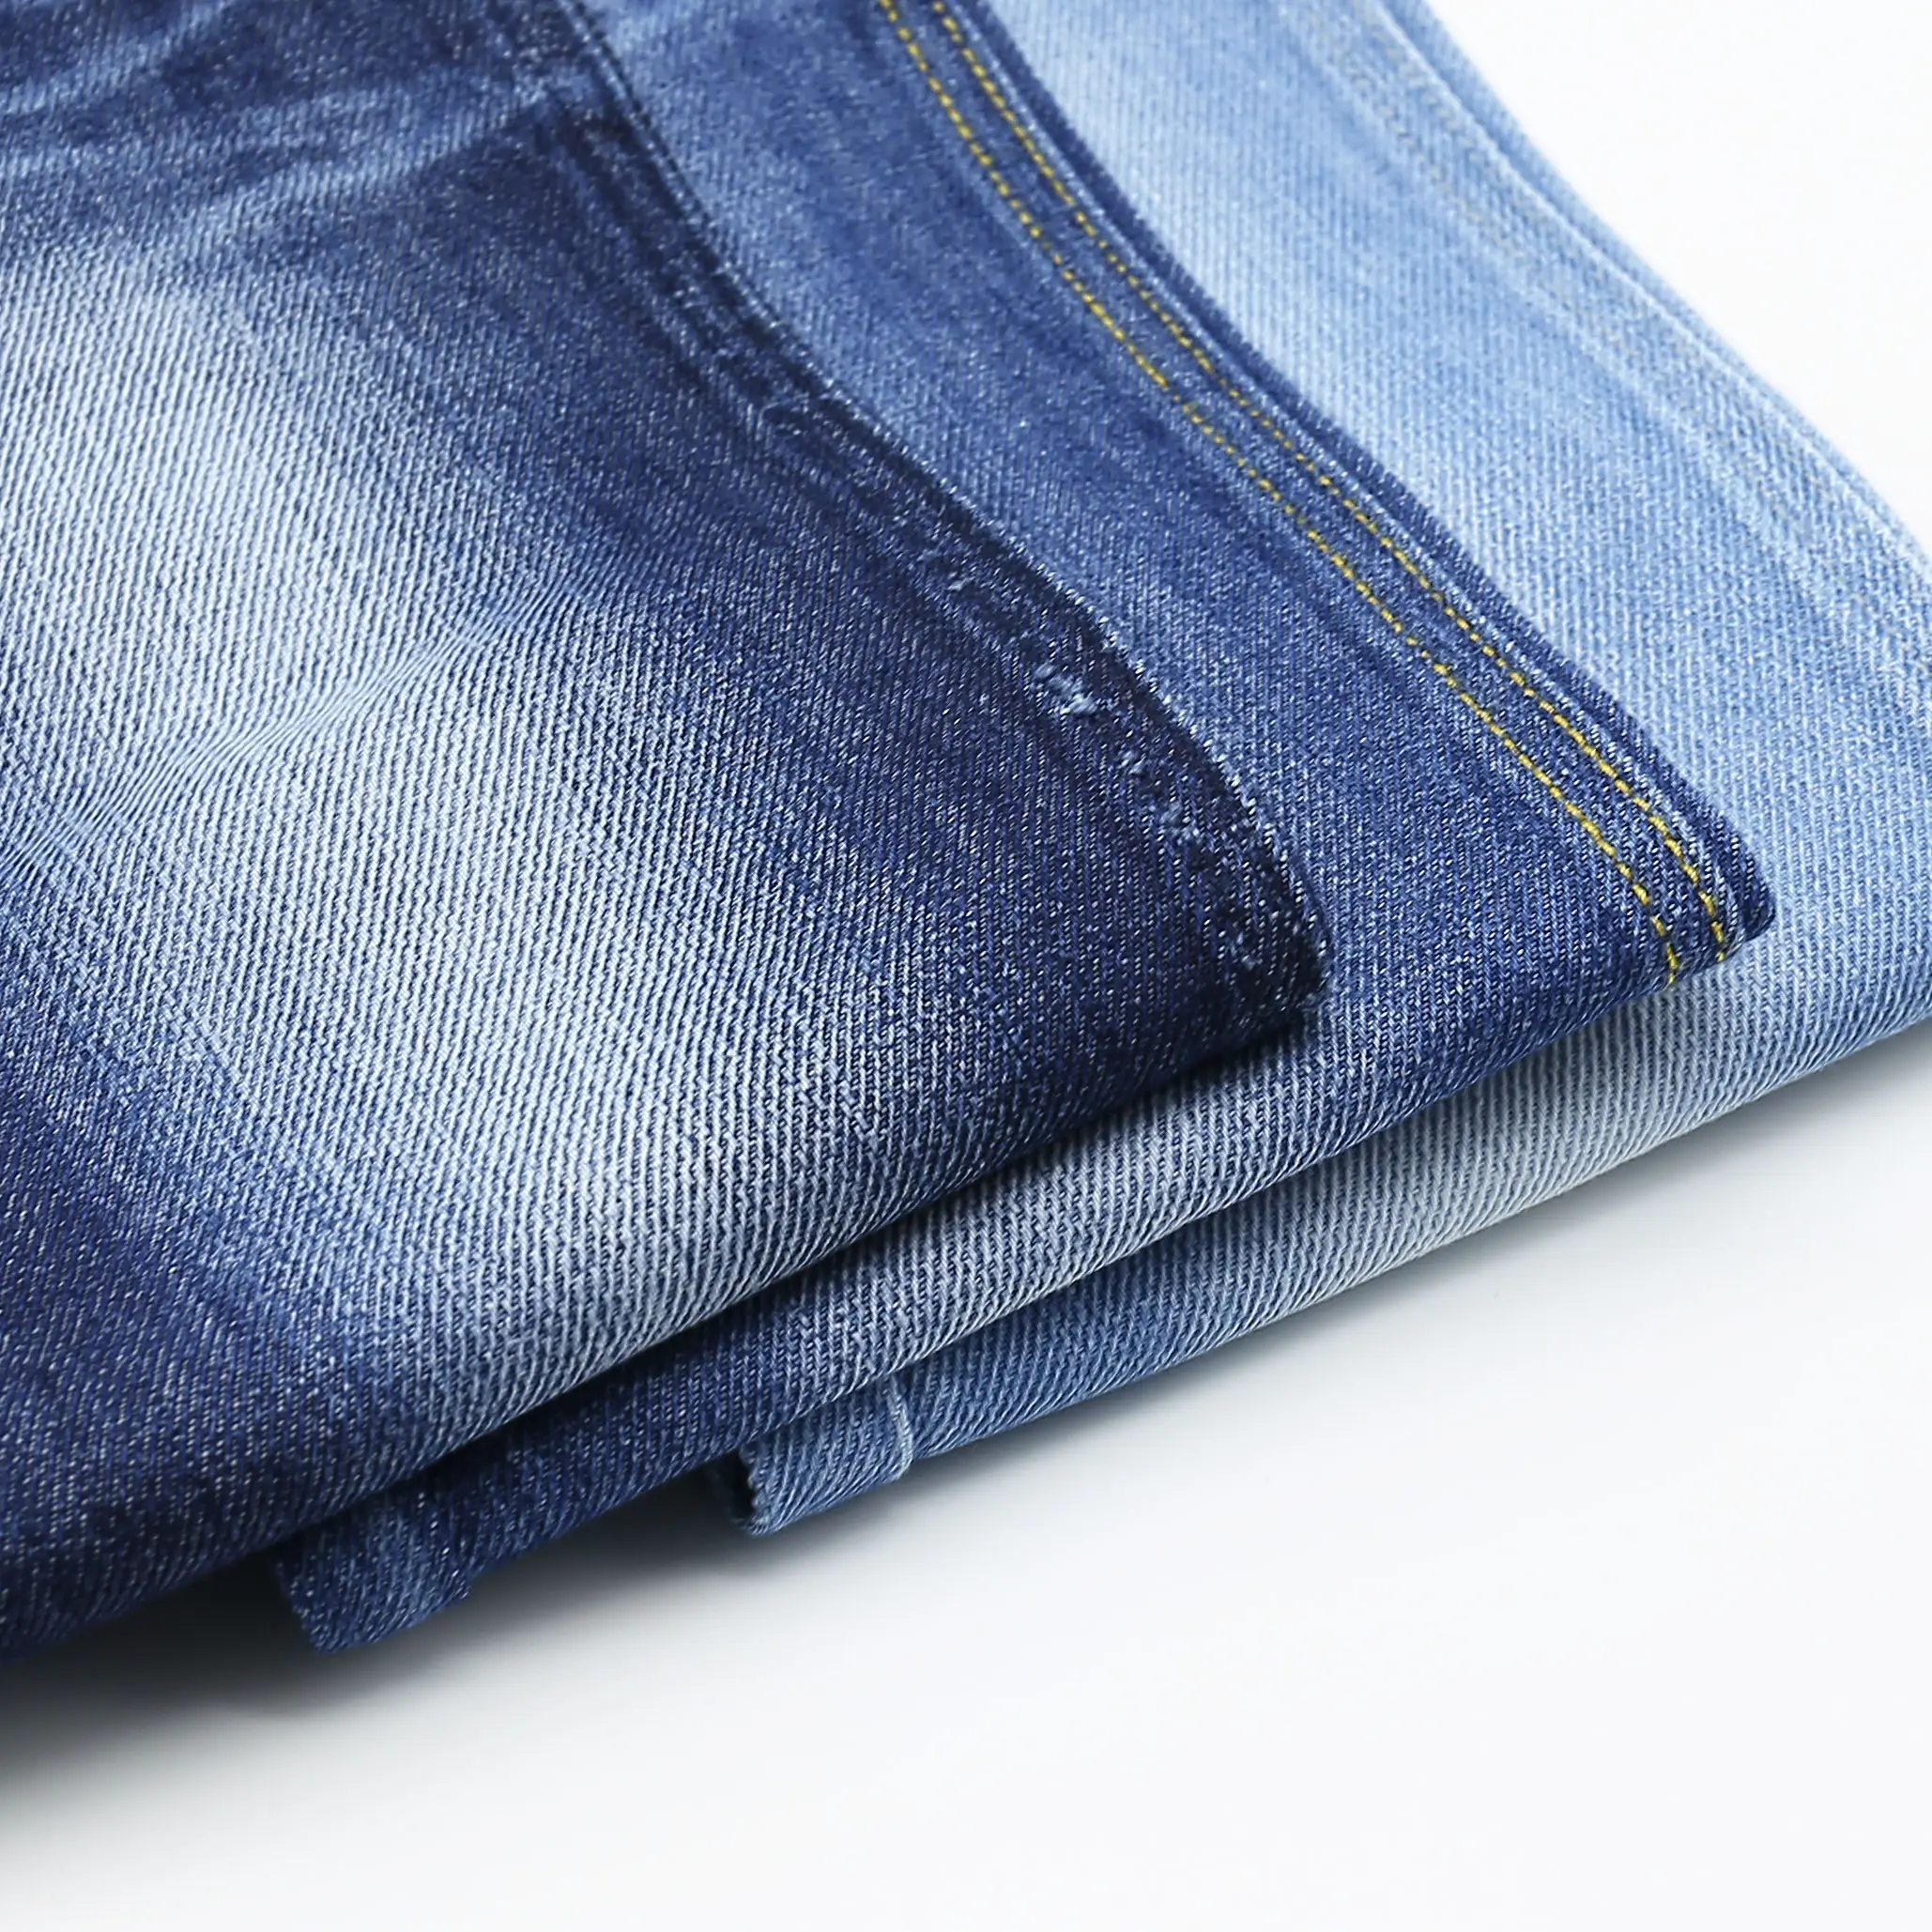 Zhonghui grande quantidade tecido denim azul tecido jeans linho